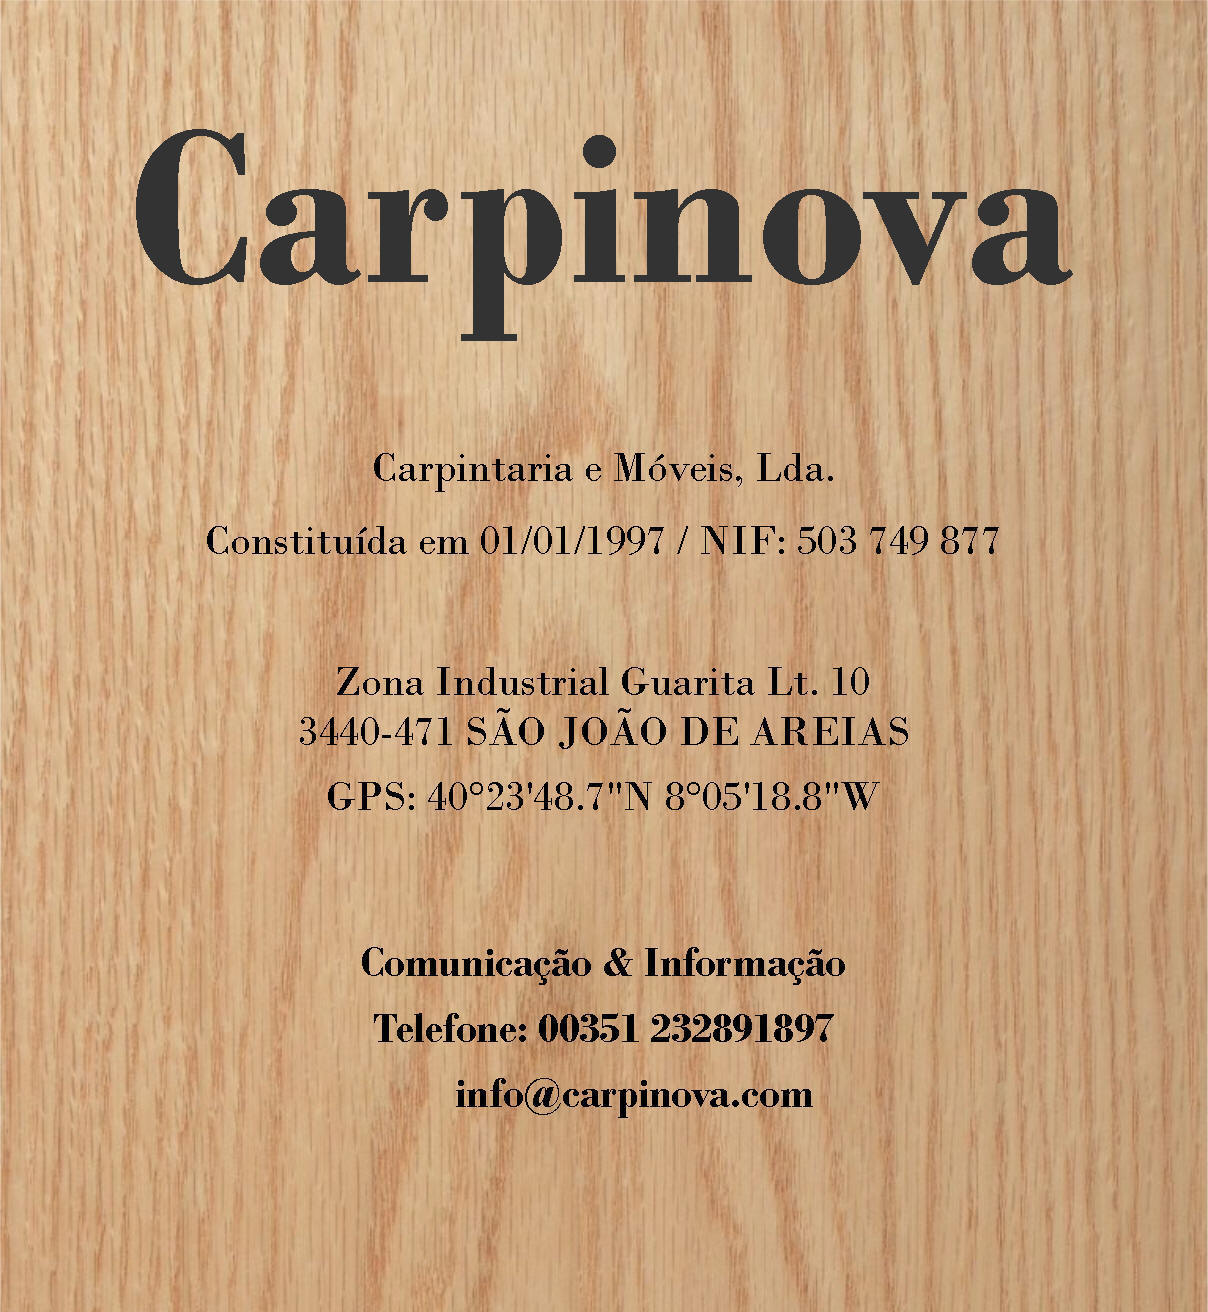 Carpinova